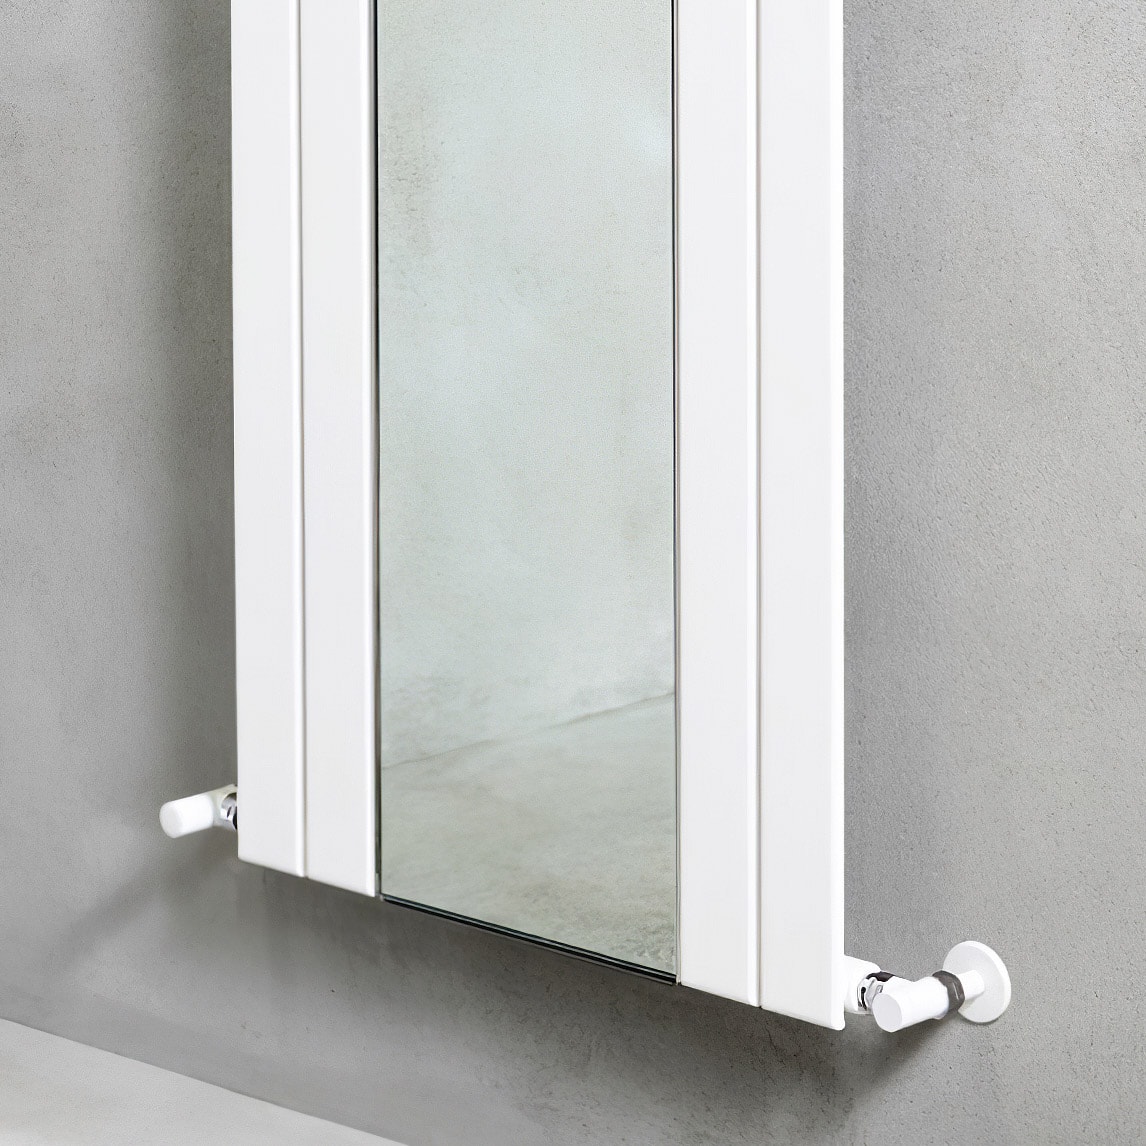 Picchio Specchio - Moderner CALEIDO Heizkörper mit zentralem Glasspiegel | Radiamo